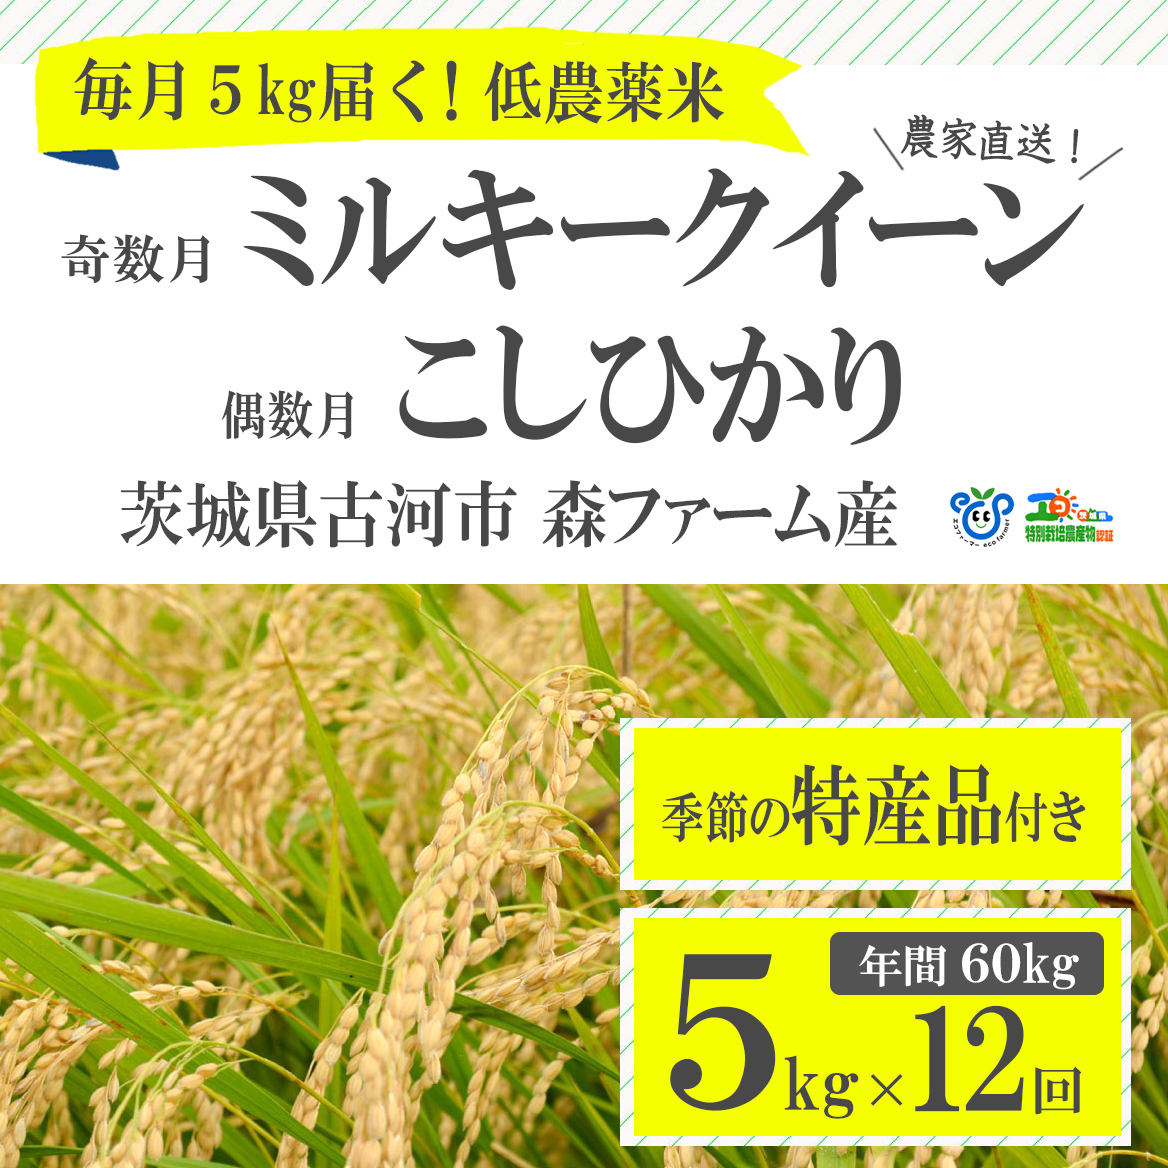 [定期便]1年間毎月届く!低農薬米こしひかり(偶数月)とミルキークイーン(奇数月)5kg_BI03 ※季節の特産品付き